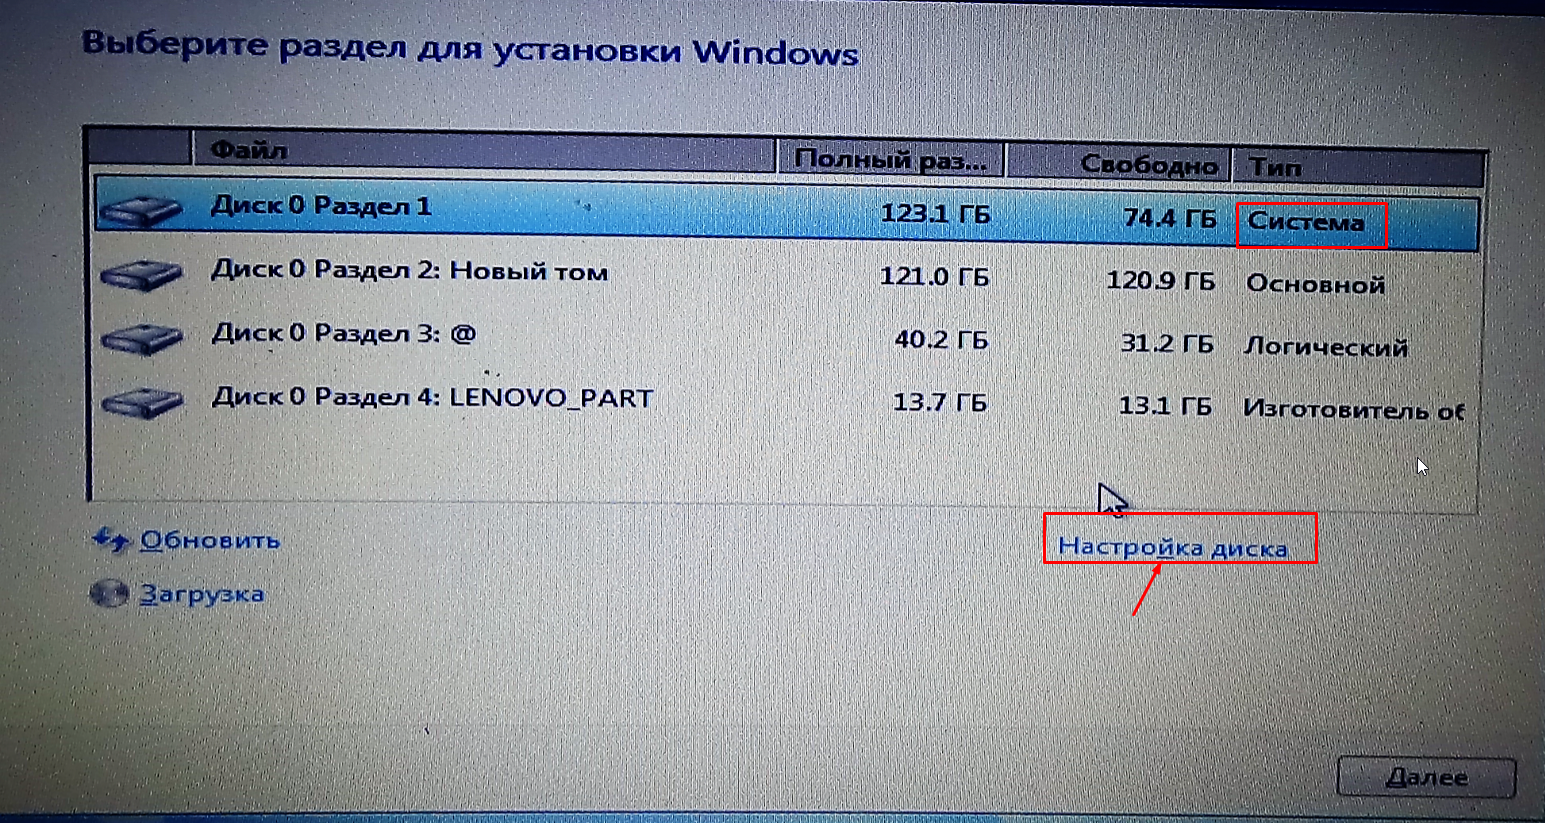 Как установить / переустановить чистый windows 7 | procompy.ru - решение проблем с пк, советы и мнение экспертов.